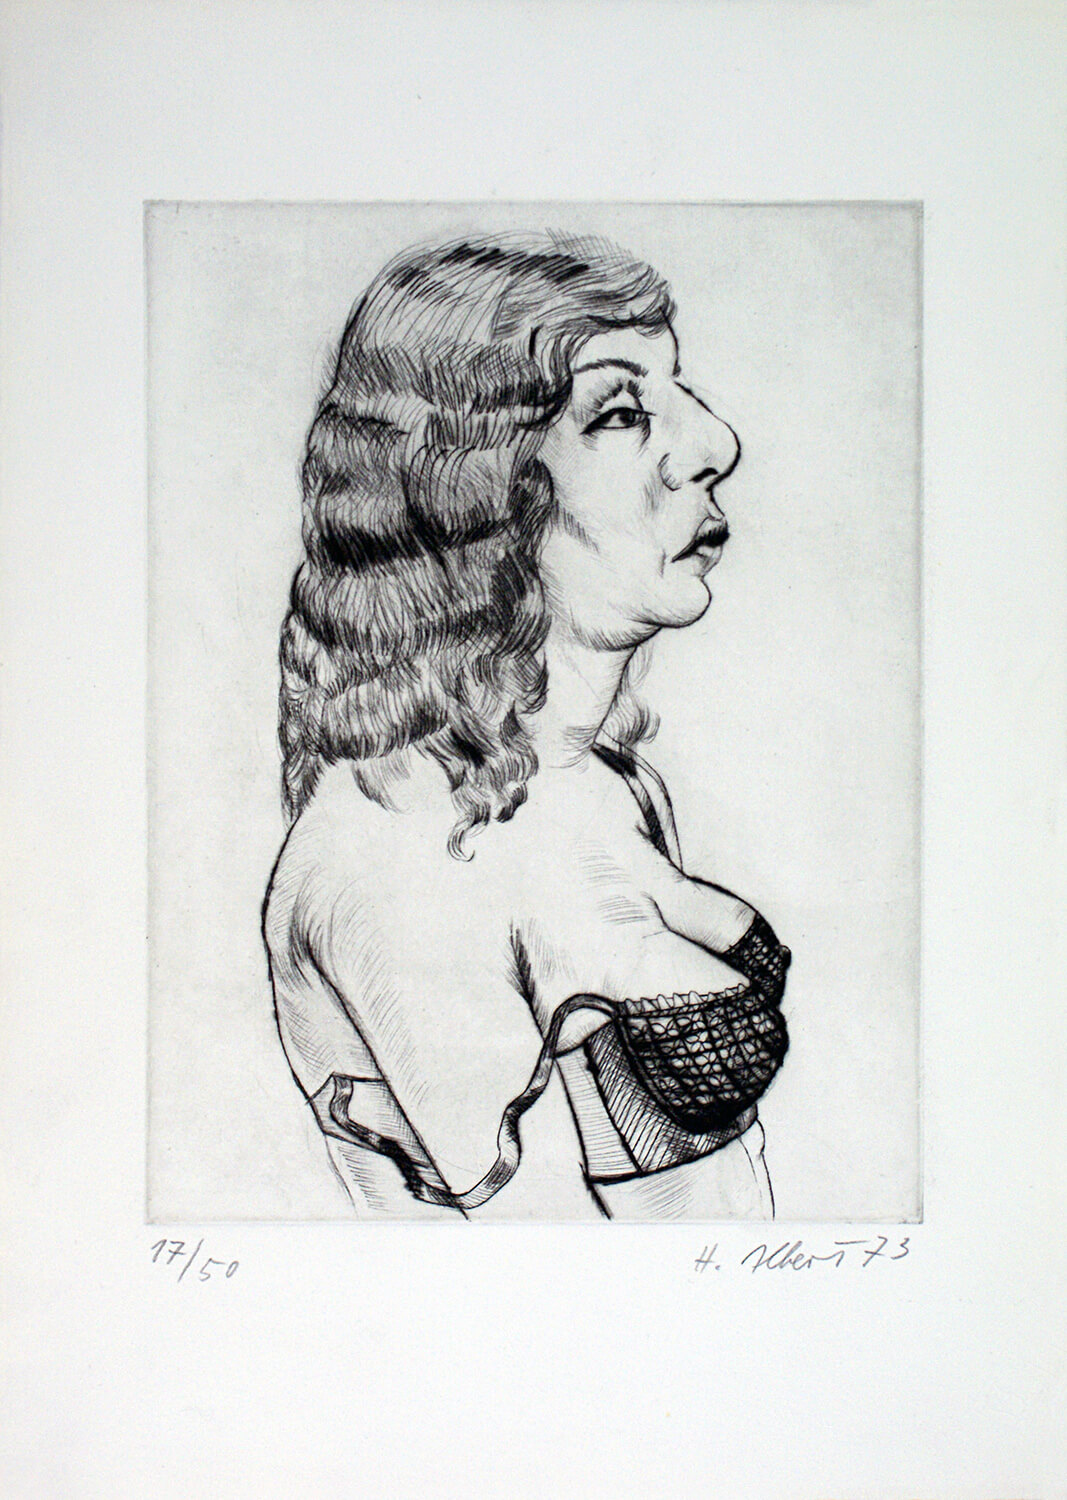 Hermann Albert, o. T., 1973, Radierung, Auflage: 50, Bild: 19,5 x 15 cm, Blatt: 29 x 20,7 cm